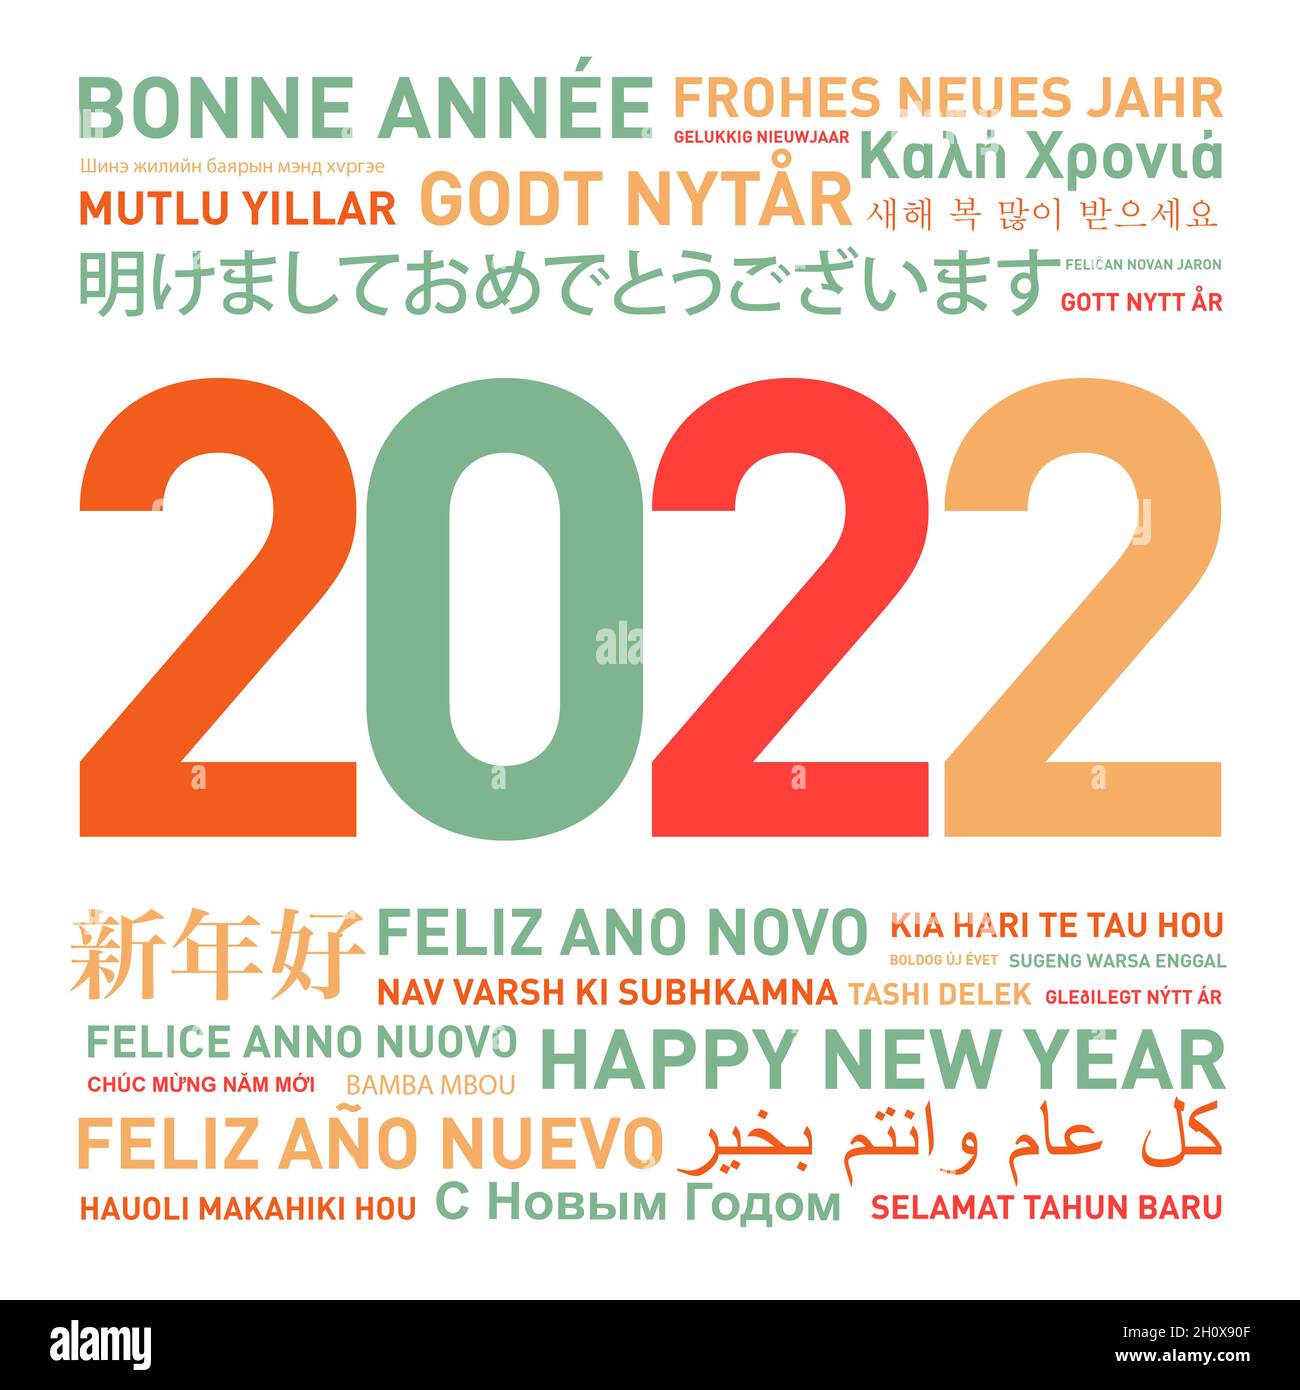 Bonne année 2022 carte du monde entier dans différentes langues Banque D'Images